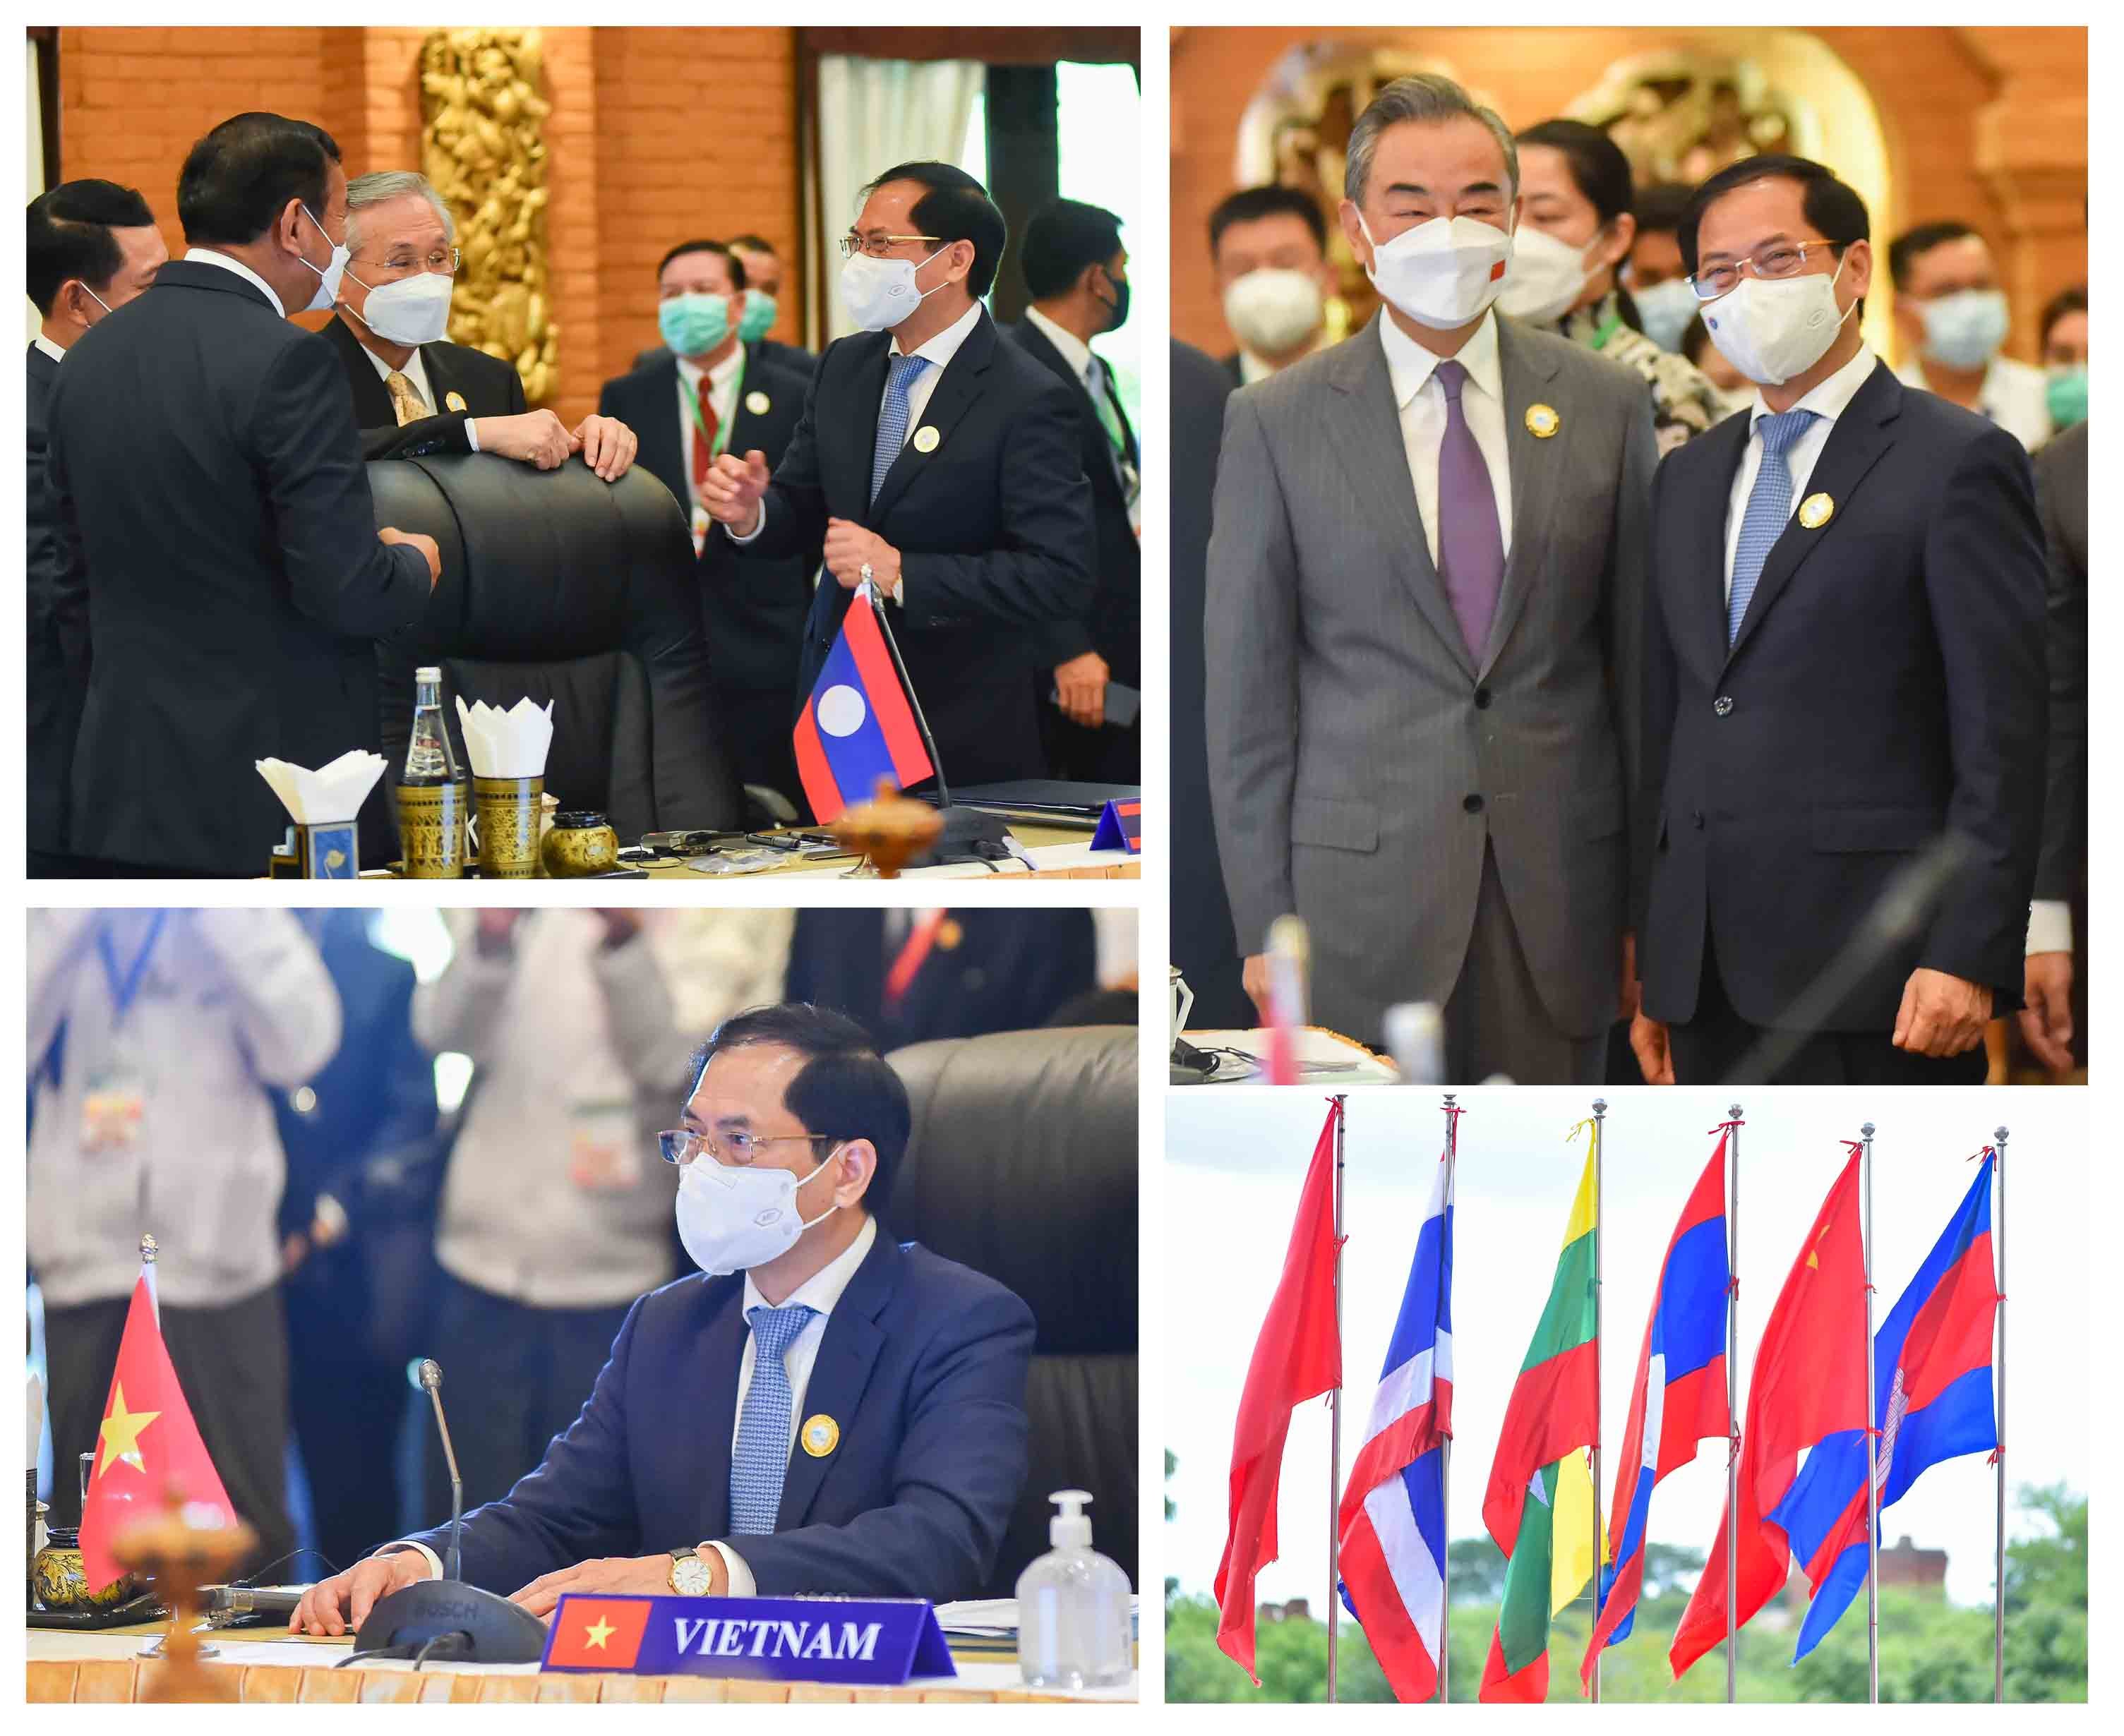 Hội nghị hợp tác Mekong-Lan Thương 7:  Những ưu tiên hàng đầu